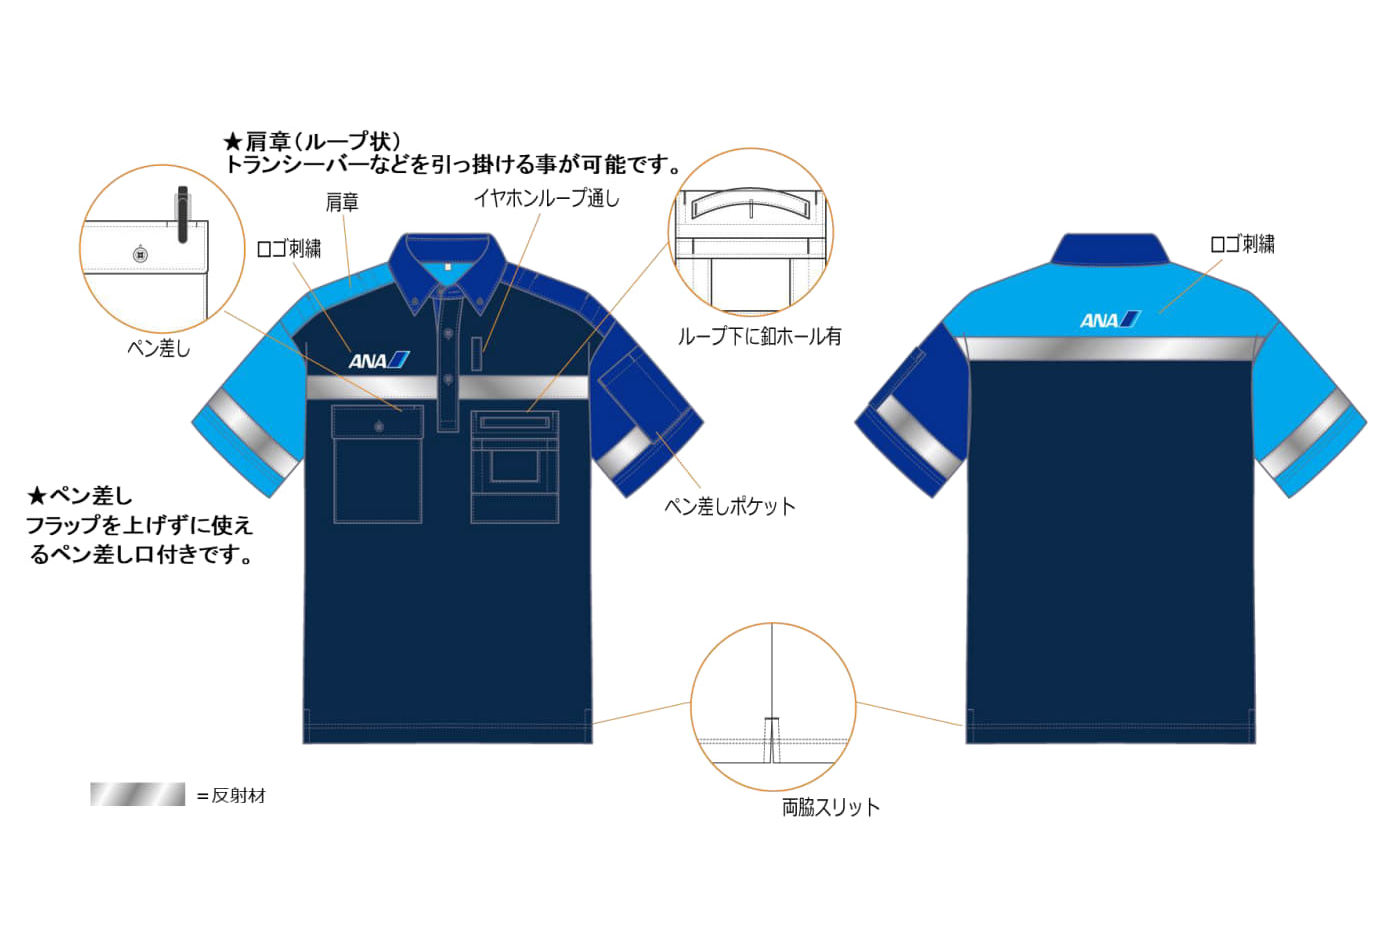 新制服のデザインイメージ